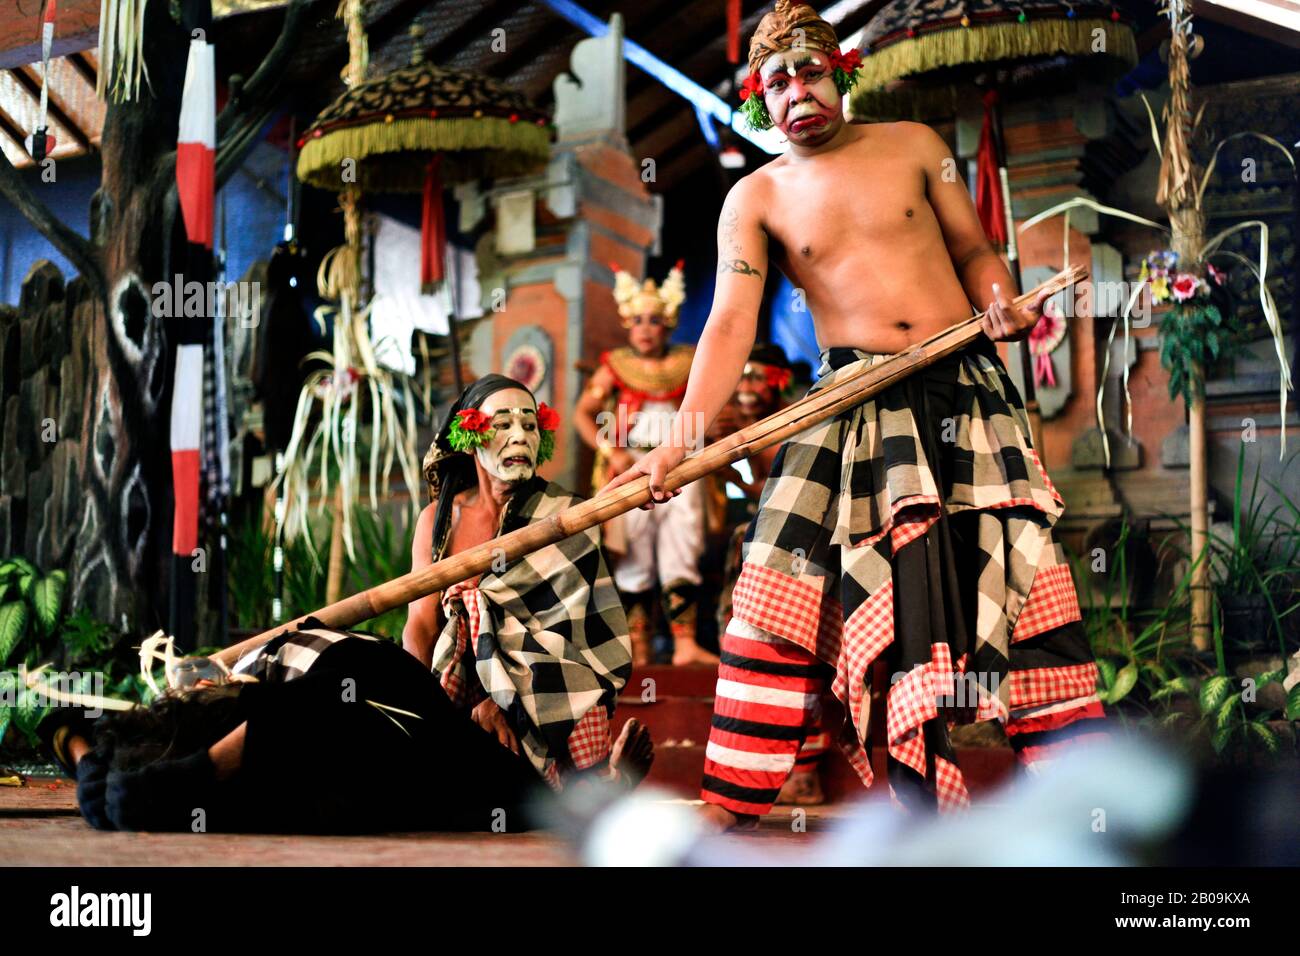 Darsteller durch ein Tanz-Drama verkörpern den balinesischen Hinduismus, in einem Tempel auf Bali. Im Gegensatz zum traditionellen Hinduismus betont der balinesische Hinduismus die lokalen und angestammten Geister und die dramatischen und ästhetisch befriedigenden Handlungen, um diese Geister zu besänftigen. Der von den Balinesen dominierte Hinduismus ist eine der sechs offiziell sanktionierten Religionen Indonesiens. Bali, Indonesien. April 2011. Stockfoto